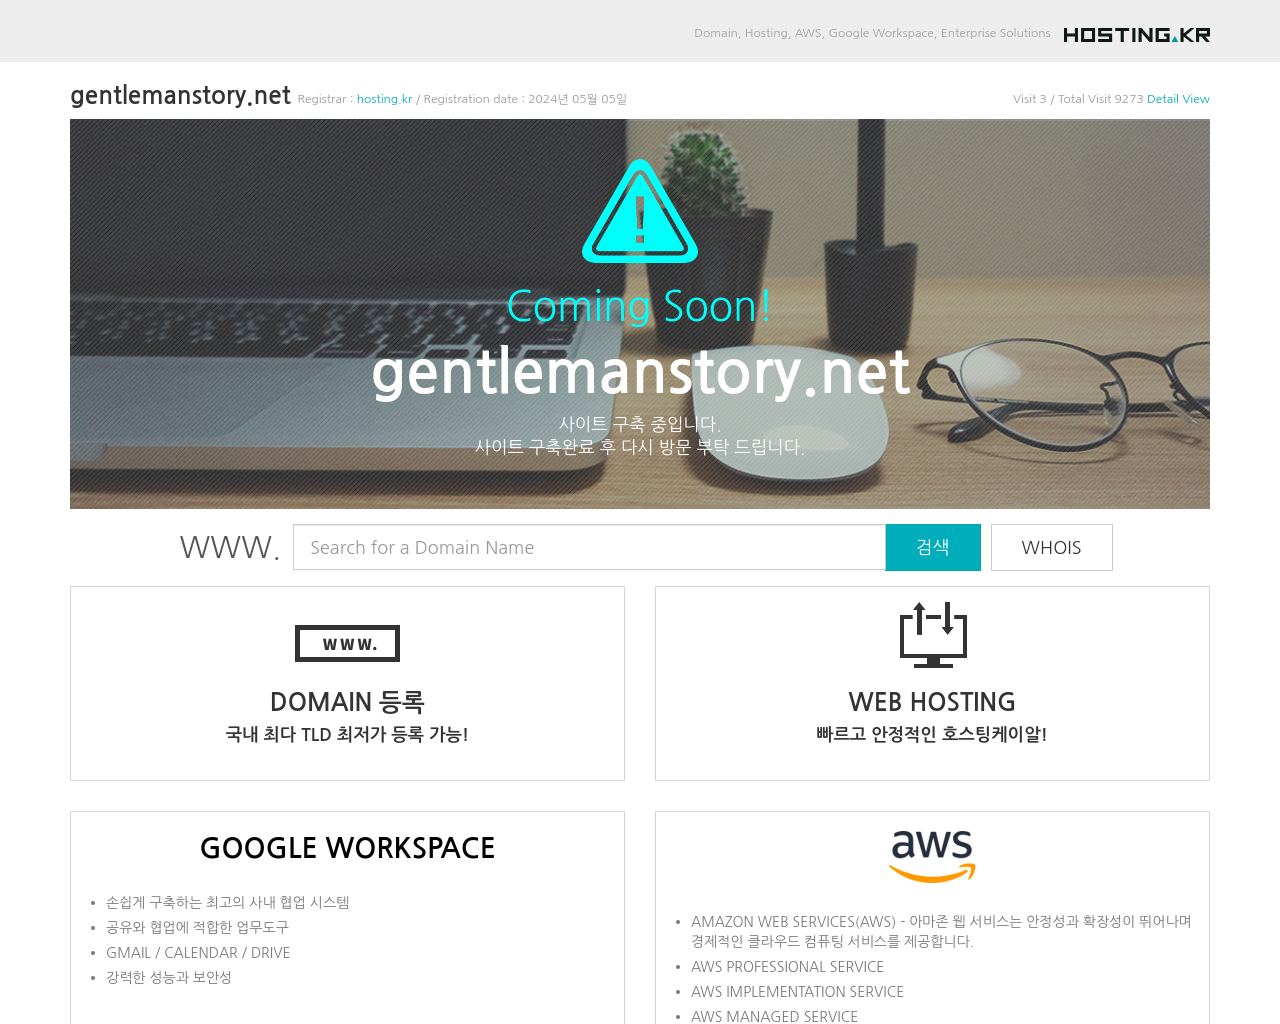 gentlemanstory.net